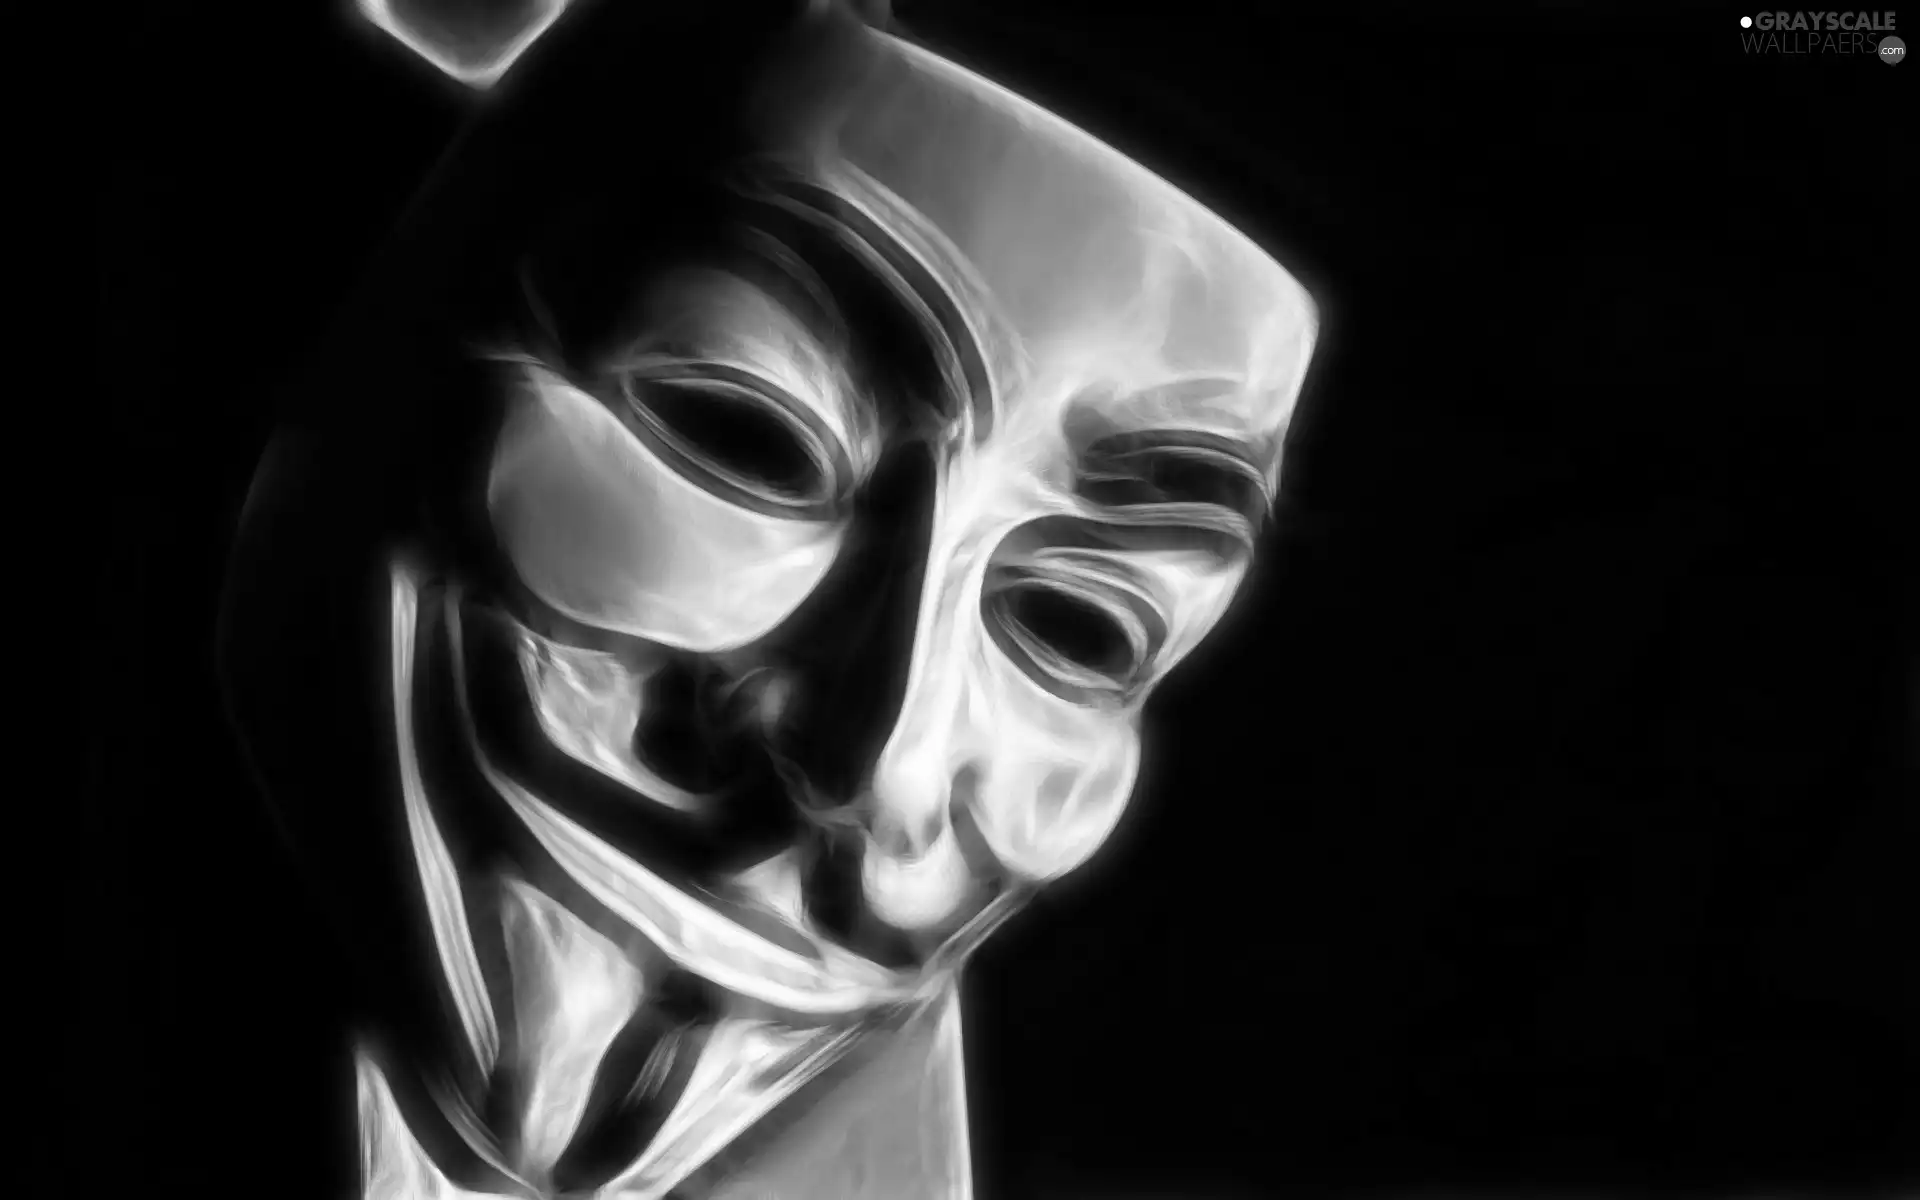 V For Vendetta, Mask